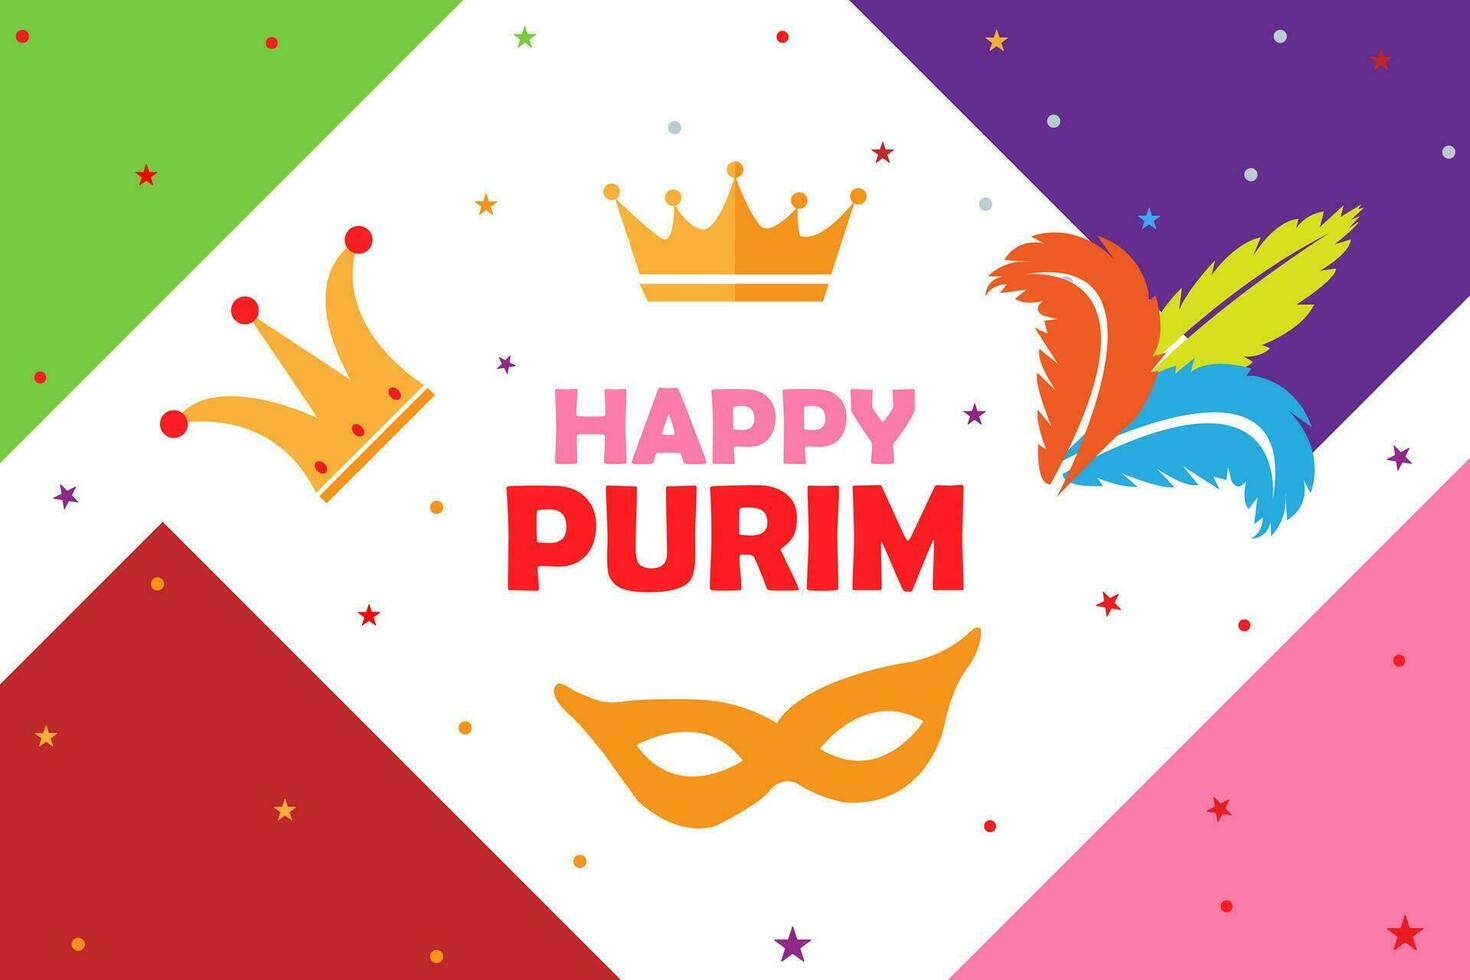 contento Purim fiesta saludo tarjeta con tradicional Purim simbolos vector ilustración. elemento para diseño negocio tarjetas, invitaciones, regalo tarjetas